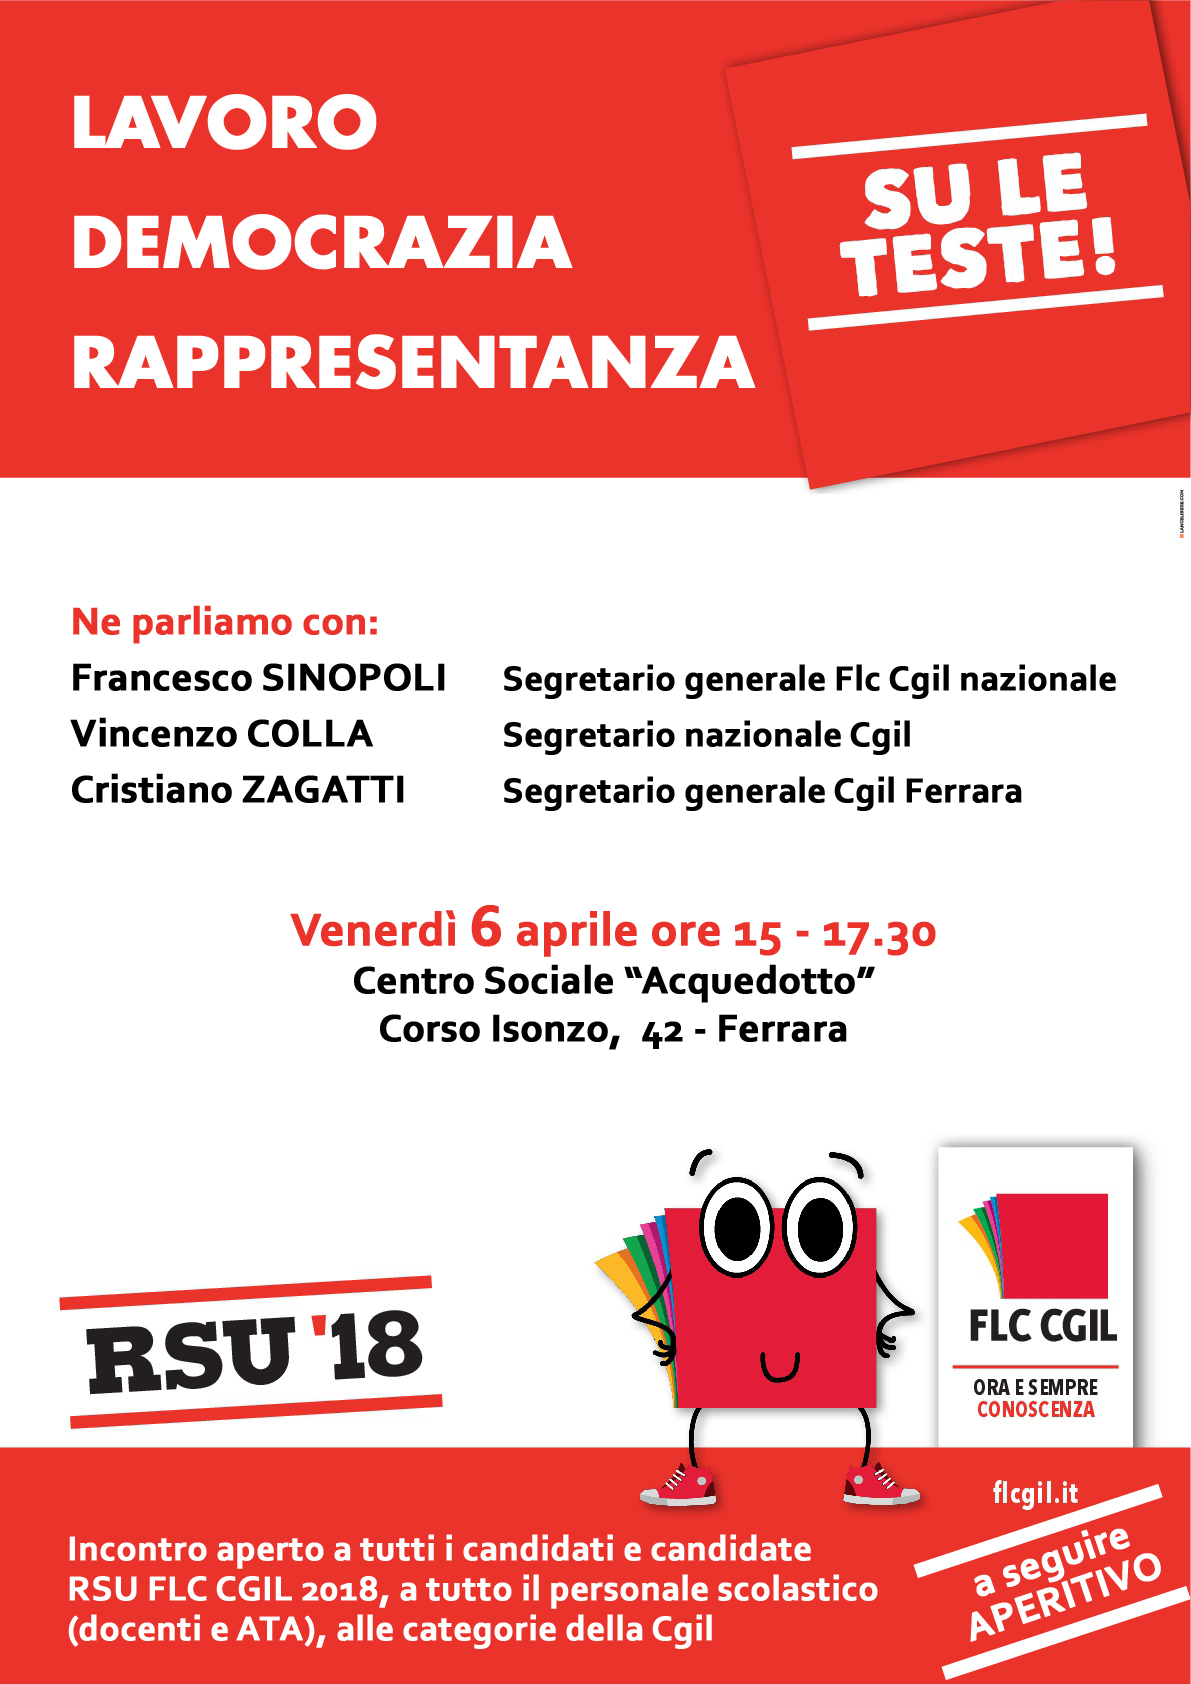 Lavoro, democrazia, rappresentanza: un incontro aperto della FLC CGIL di Ferrara